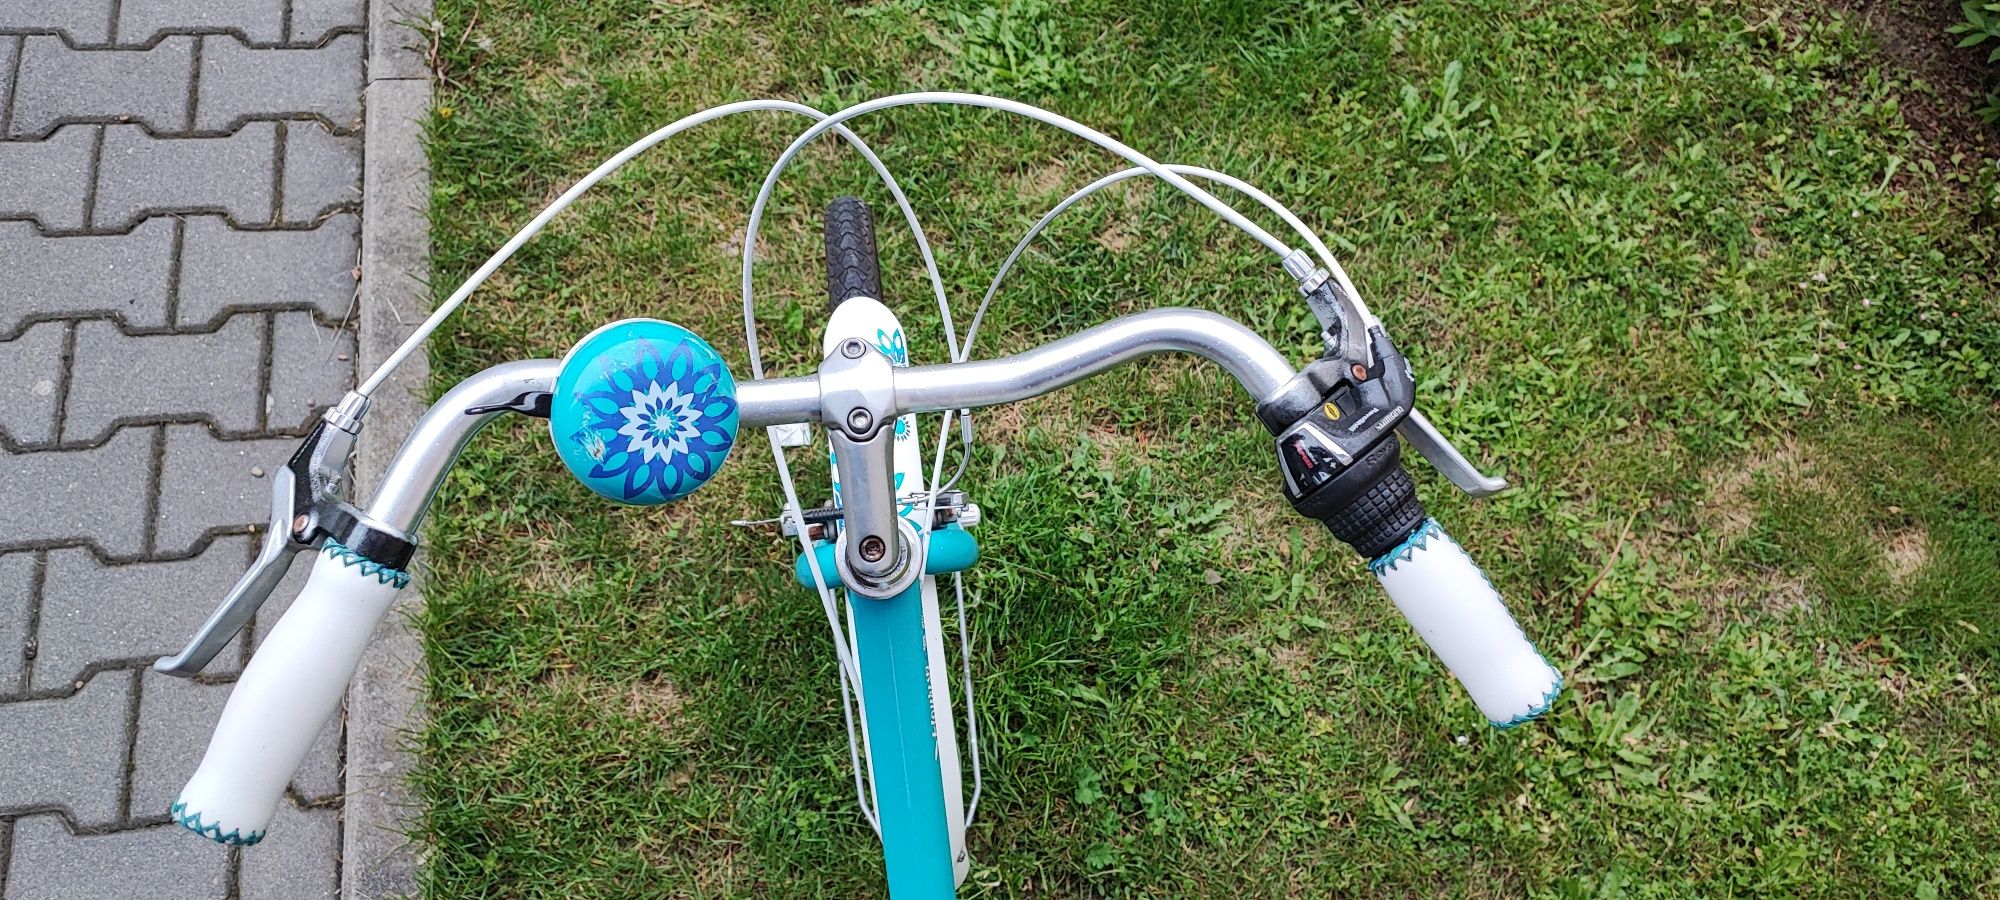 Rower dla dziewczynki Giant LIV Flourish 24 rower dziecięcy dla dziewc